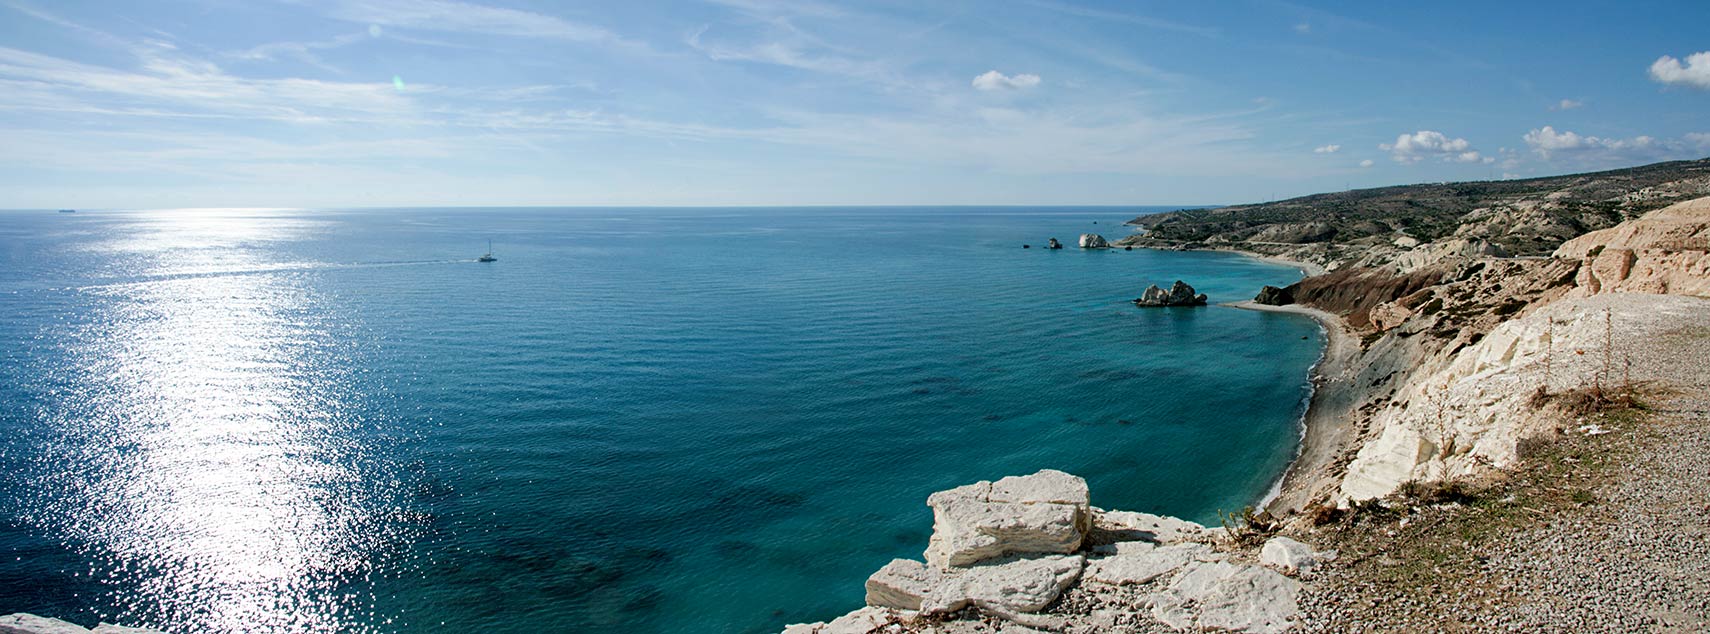 Aphrodite's Rock, Mediterranean Sea coast, Cyprus